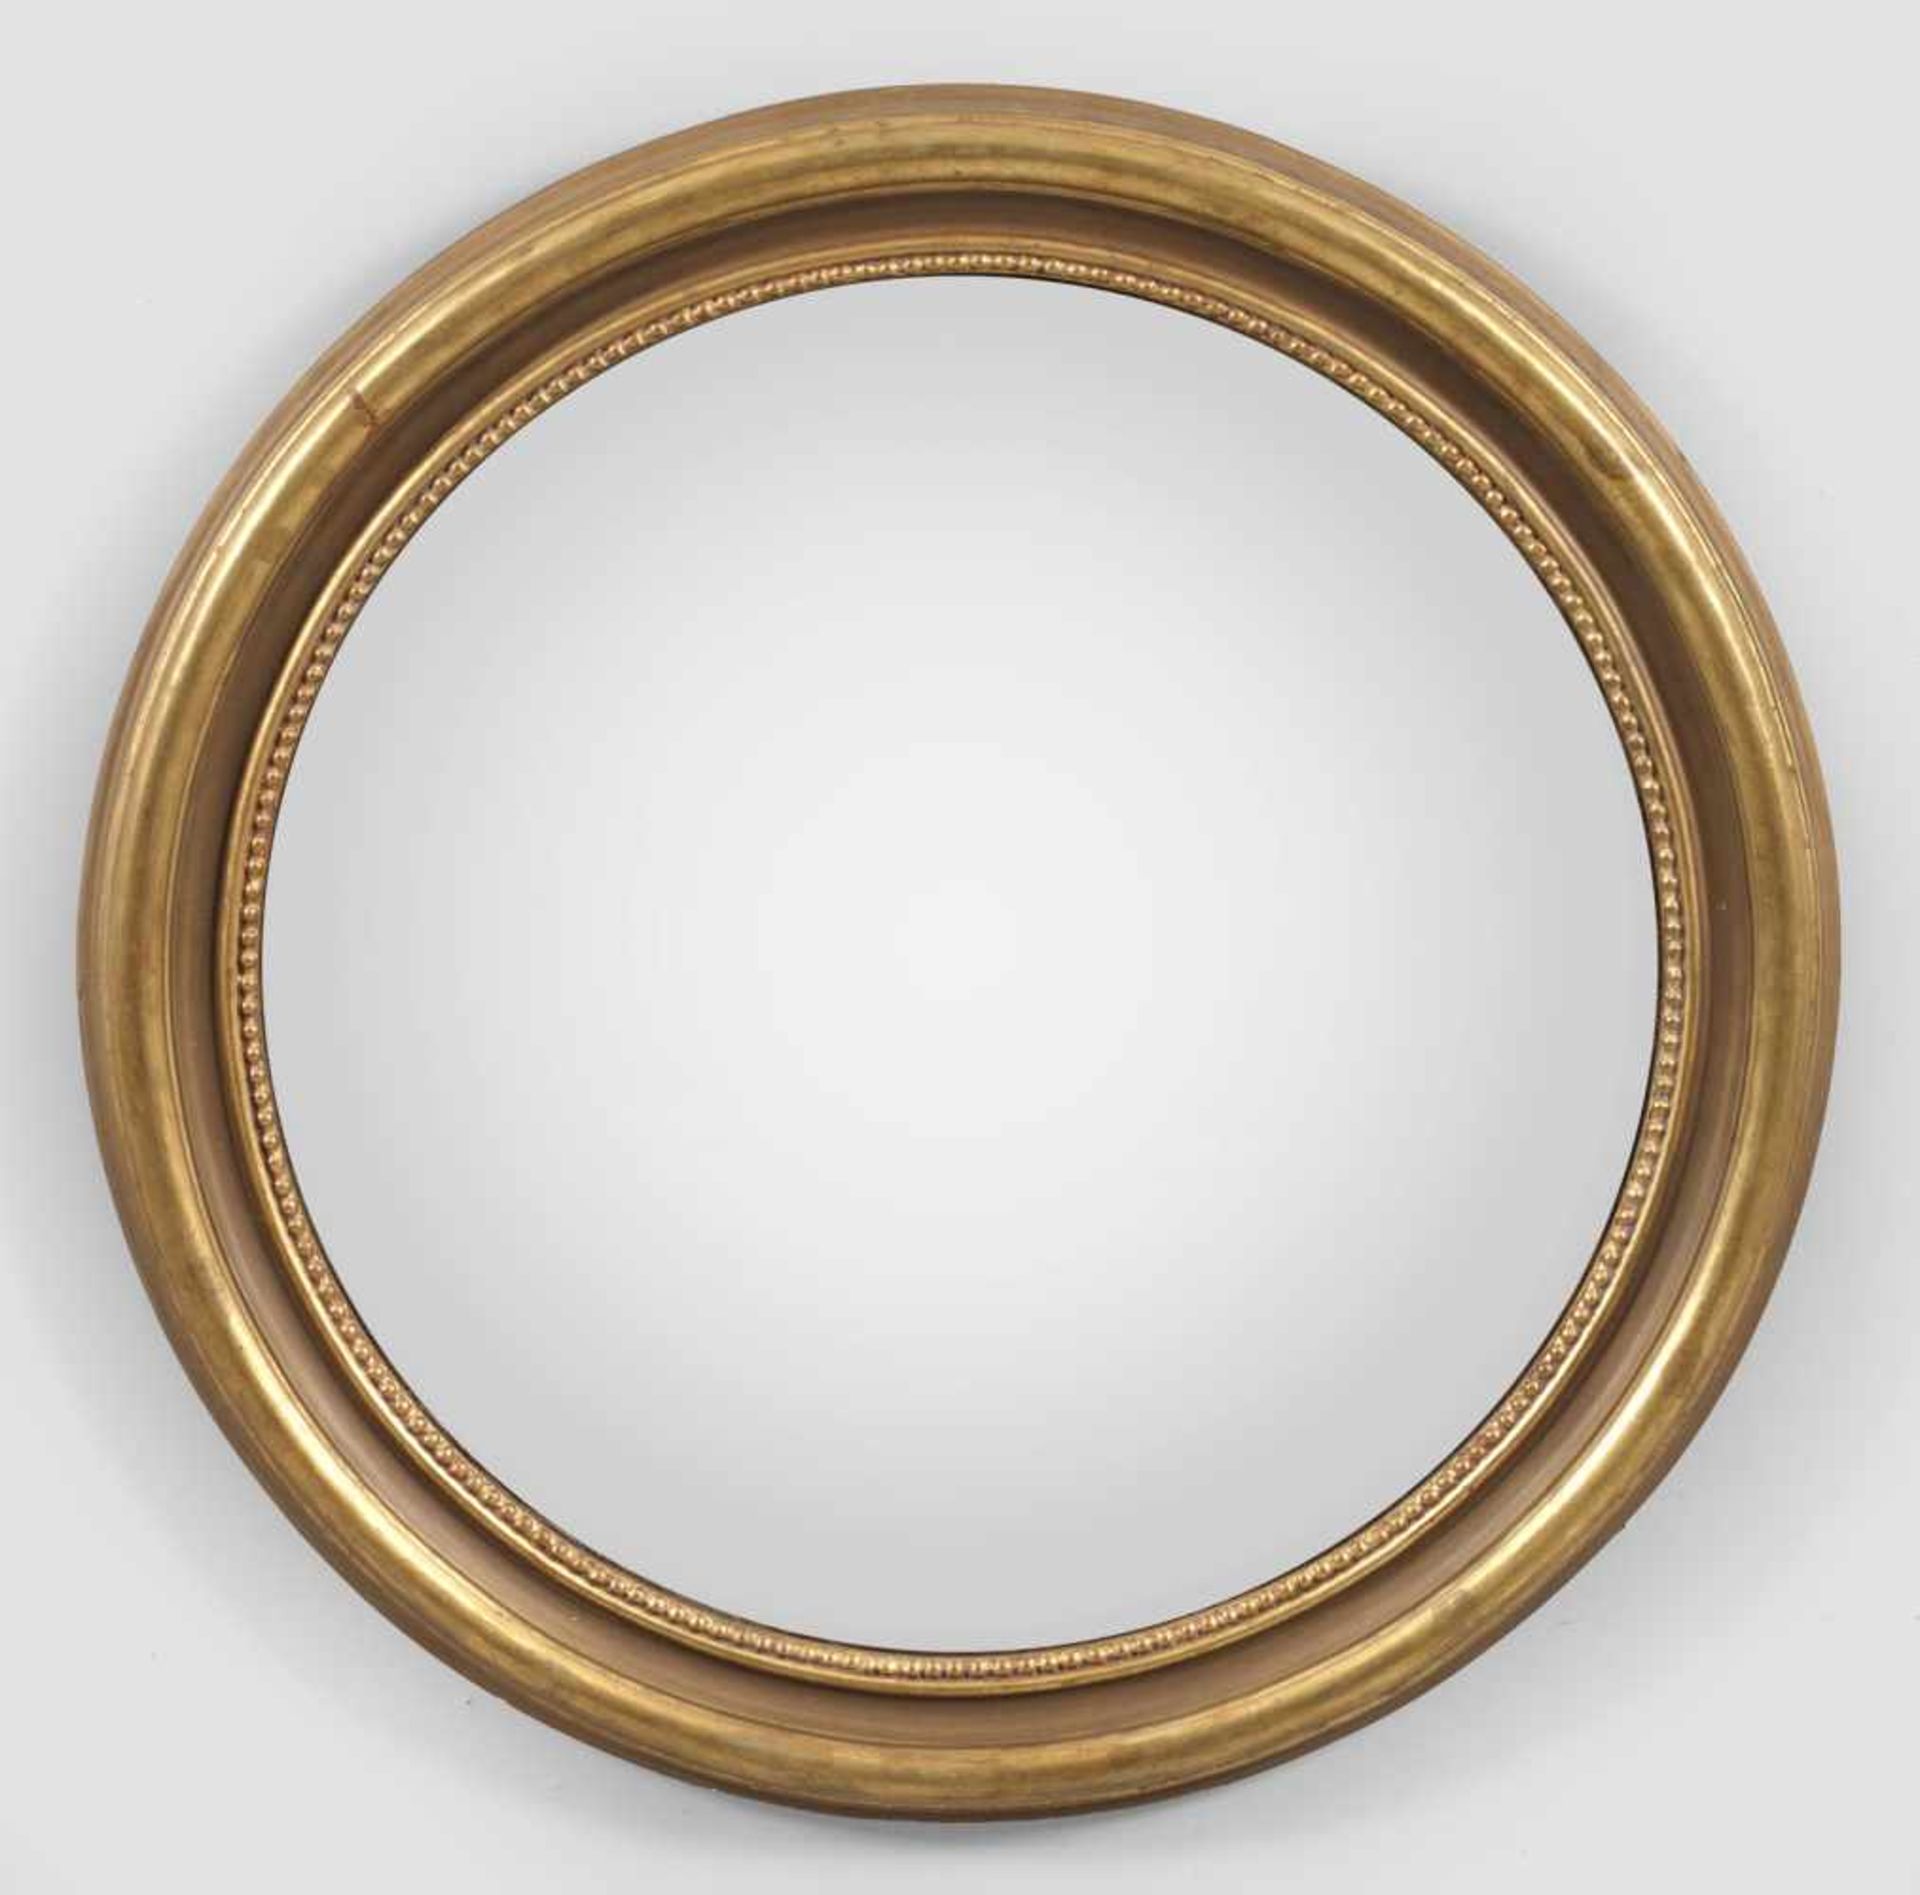 KonvexspiegelHolz, gefasst und vergoldet. Runde profilierte Spiegelrahmung mit Perlstabfries für